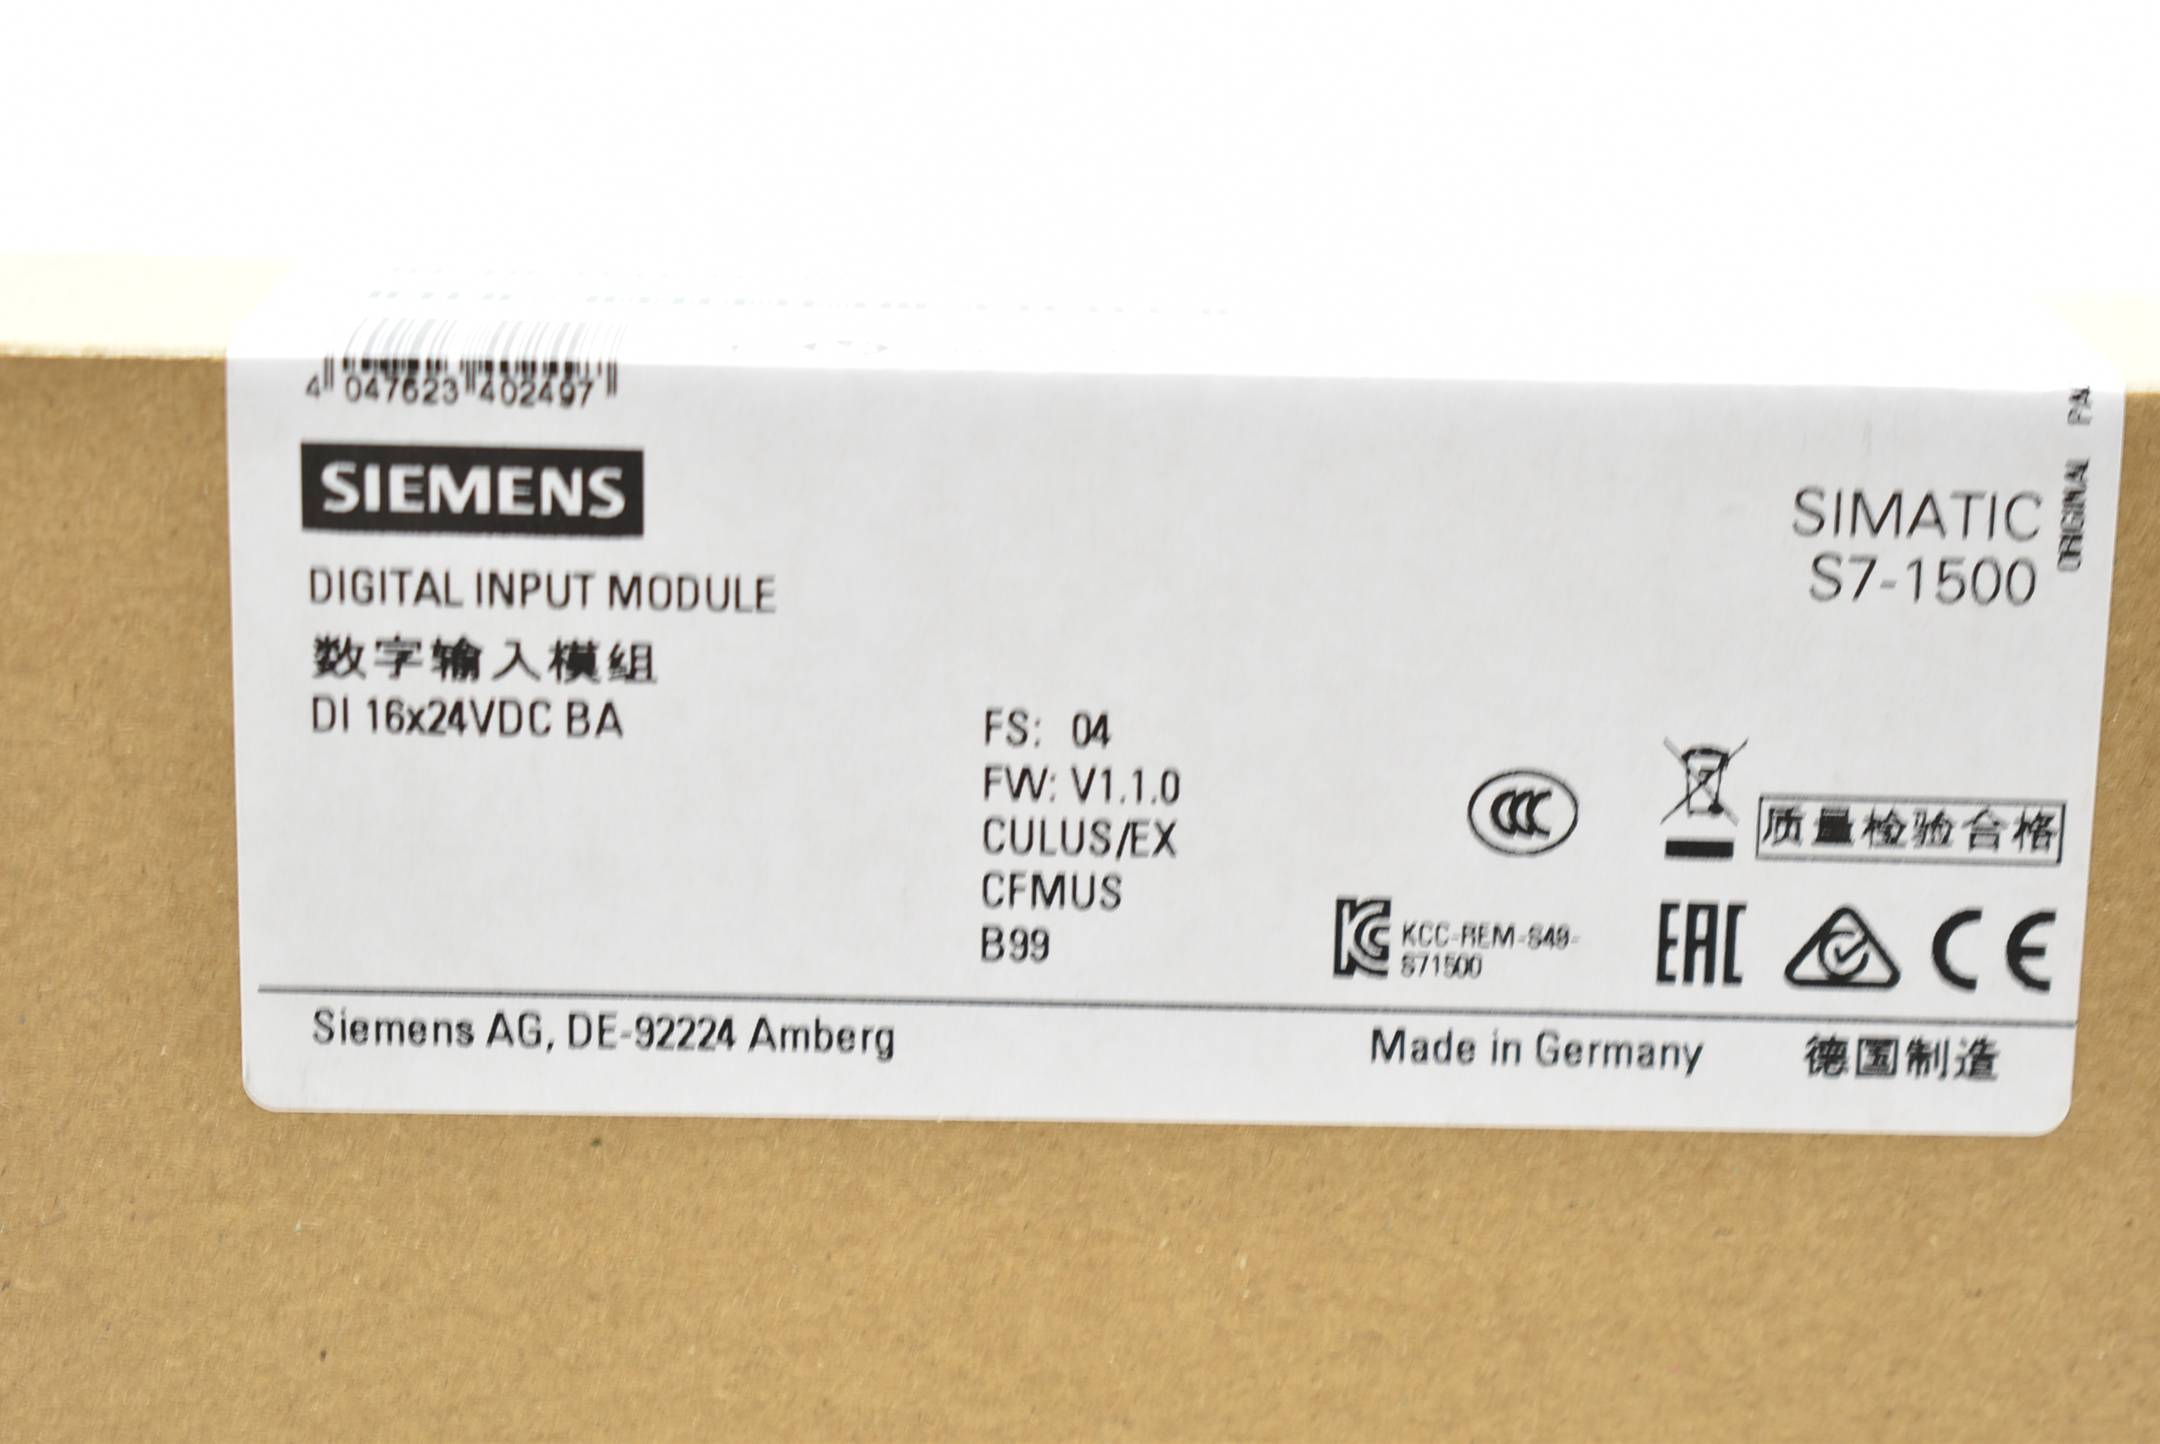 Siemens simatic S7-1500 6ES7 521-1BH10-0AA0 ( 6ES7521-1BH10-0AA0 ) E.04